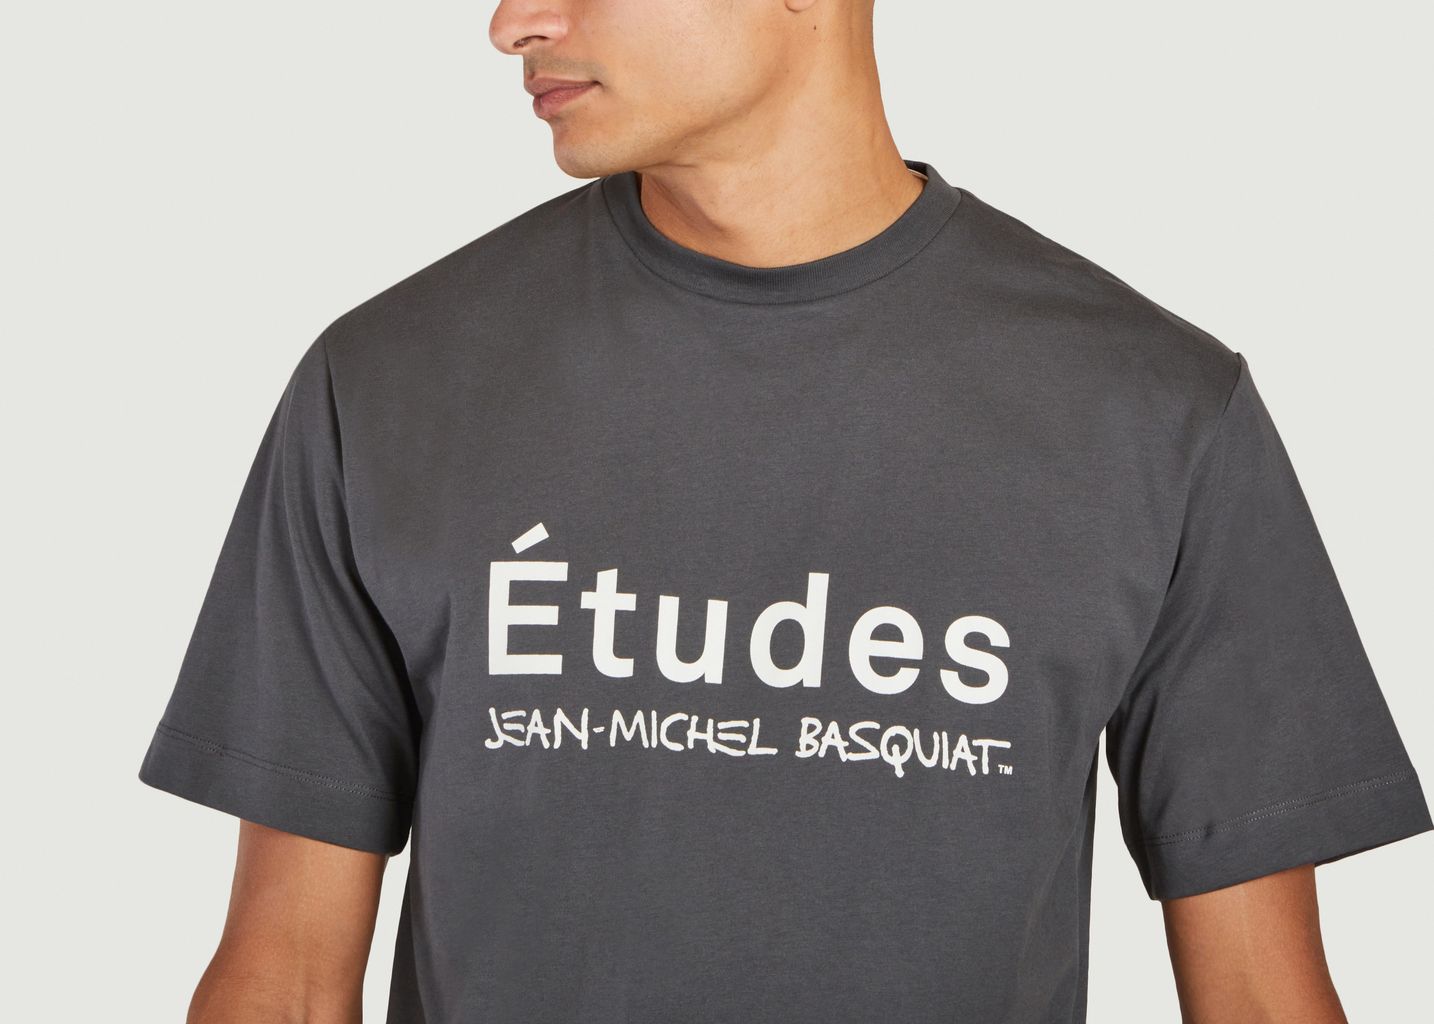 T-shirt Études Studio x Basquiat - Etudes Studio